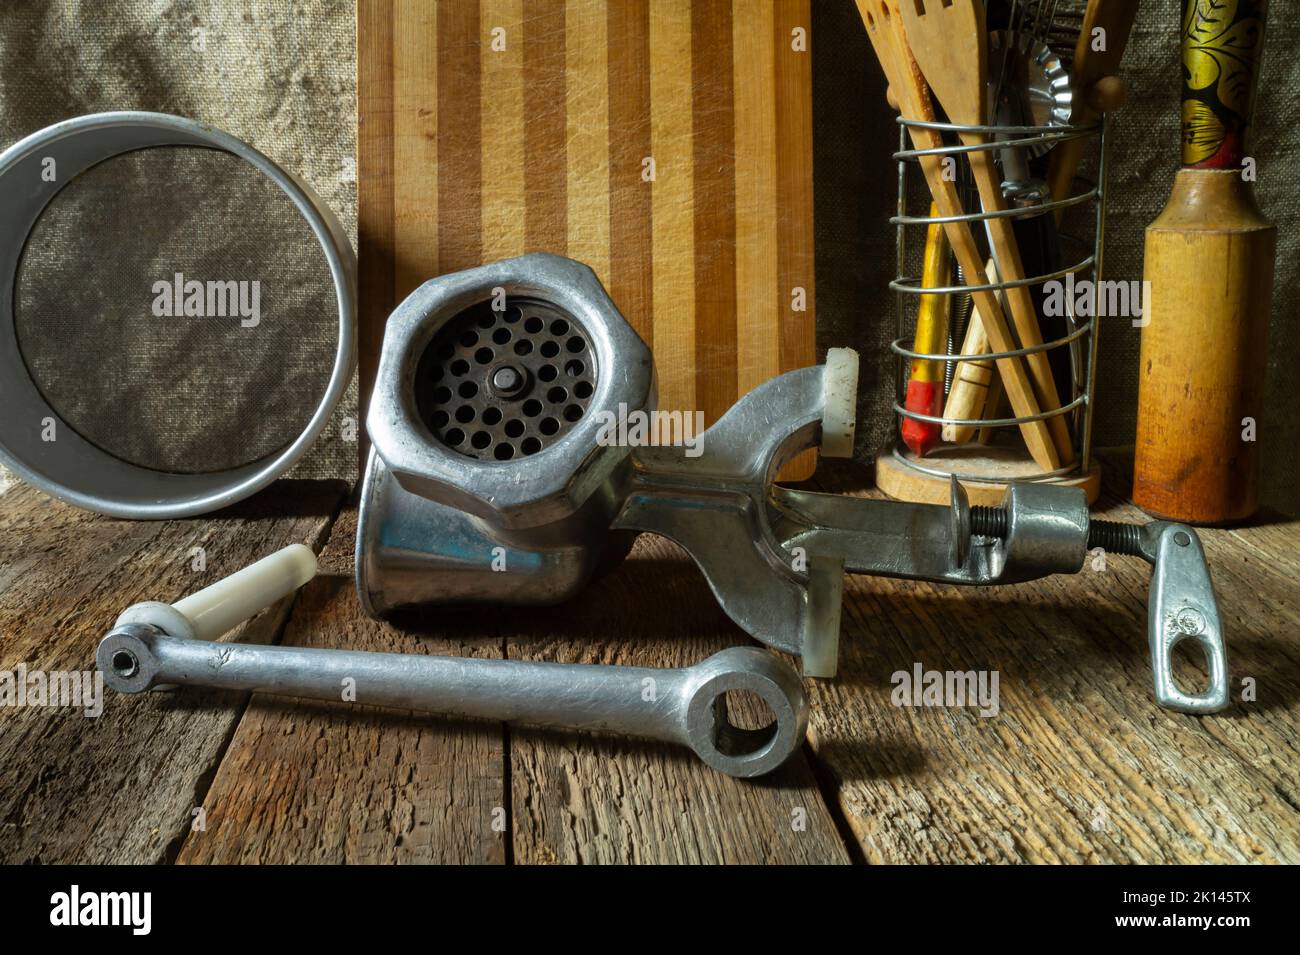 Stillleben von Küchenutensilien. Alte Geräte für die Arbeit in der Küche. Industrieartikel im rustikalen Stil Stockfoto